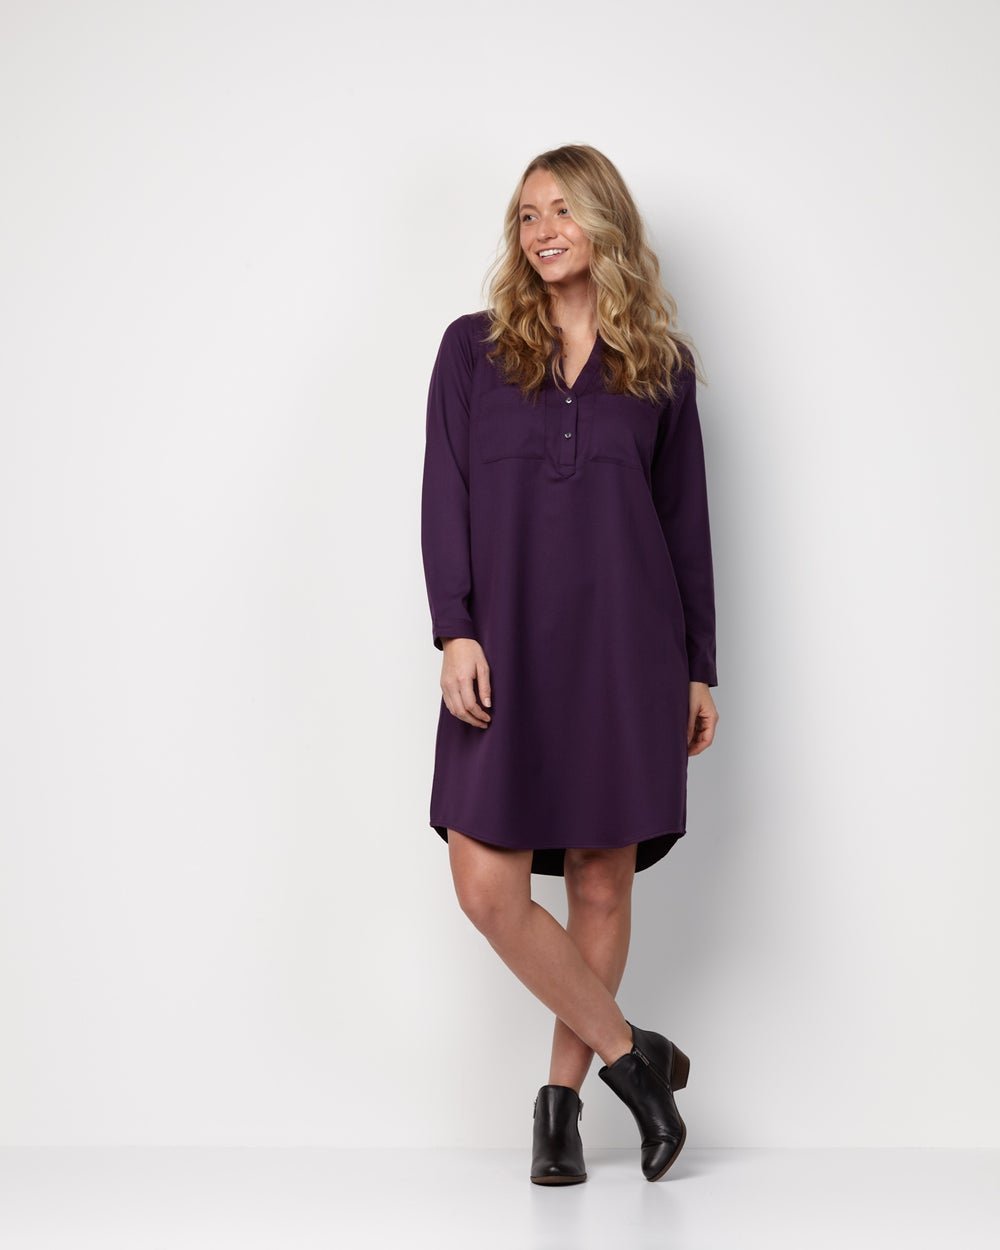 Wool& Clara Shirt Dress Review